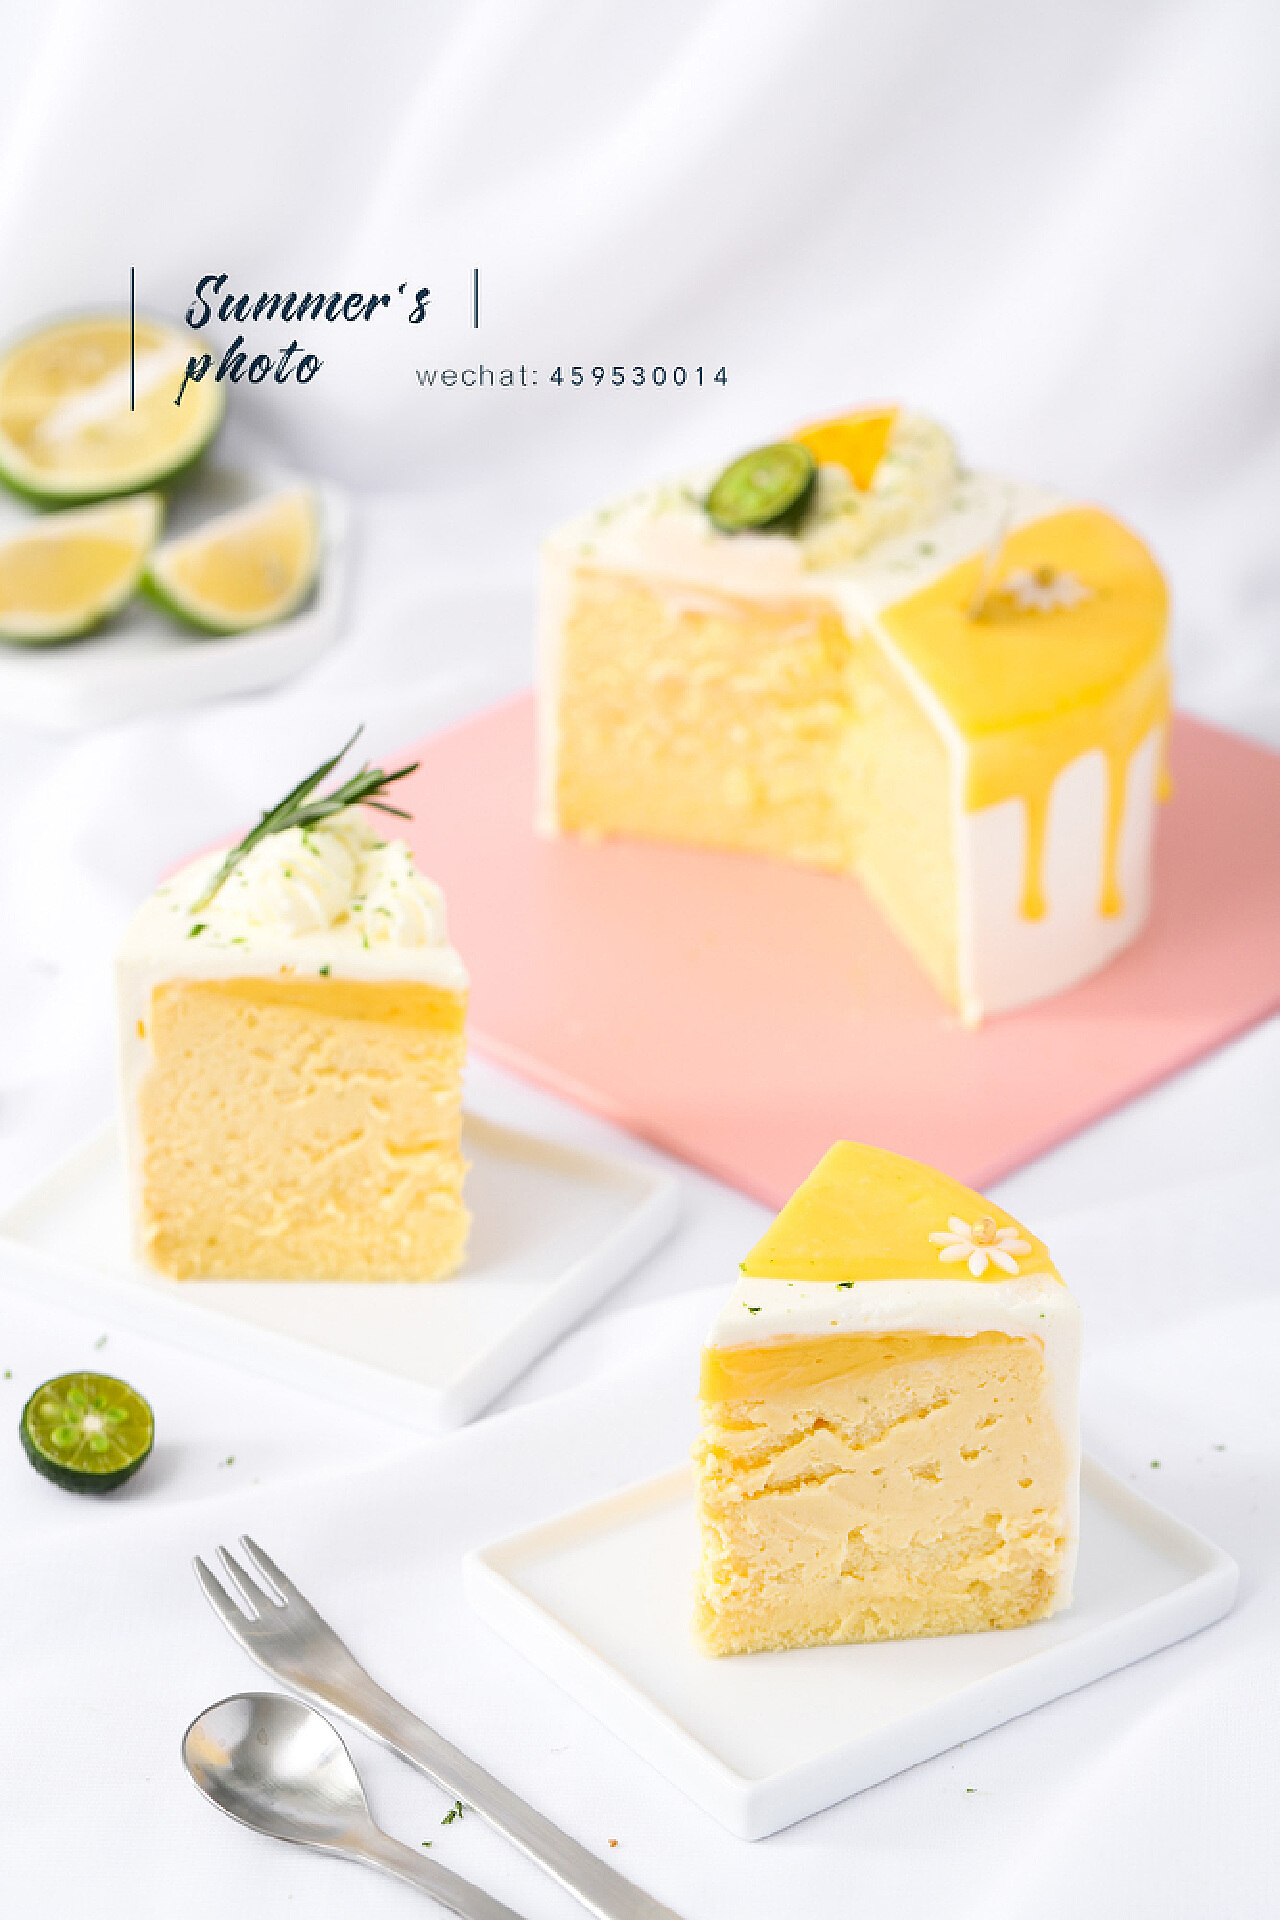 ஜ۩۞۩ஜ Vanessa の 温馨厨房 ஜ۩۞۩ஜ : English Lemon Gateau 英式柠檬蛋糕